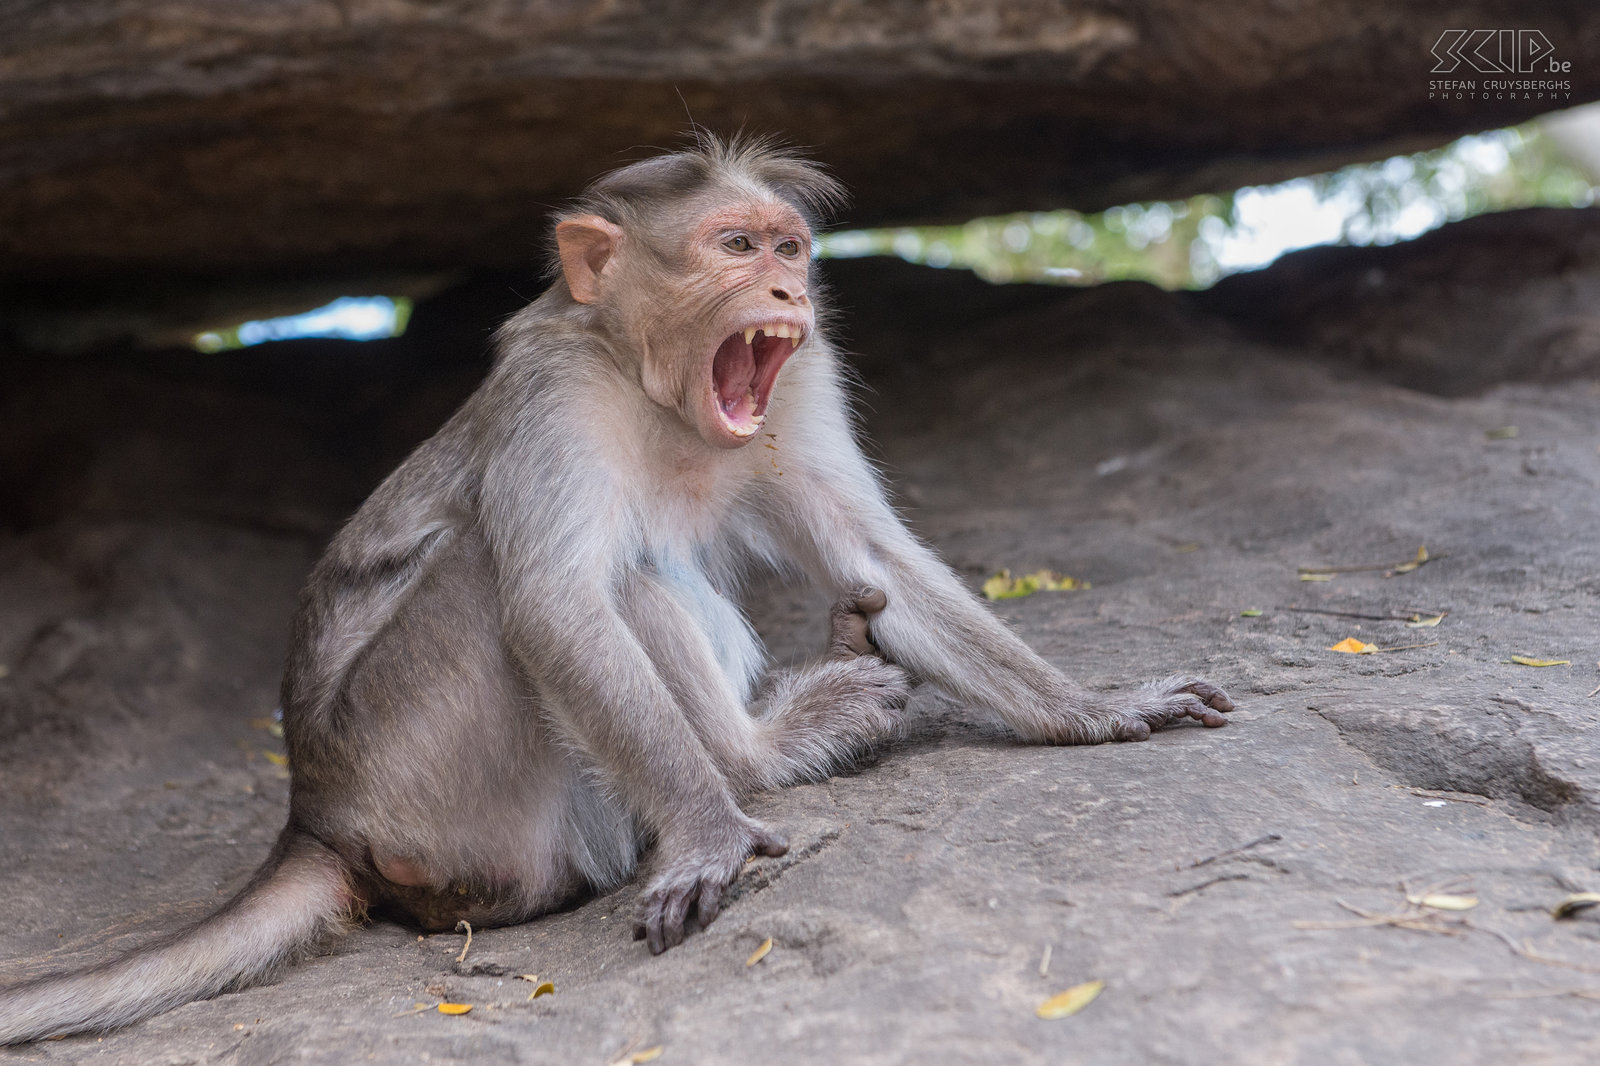 Valparai - Monkey Falls - Indische kroonaap De Indische kroonaap (Bonnet macaque, Macaca radiata) is de meest voorkomende apensoort in het zuiden van India. Ze leven in de bossen maar ook vaak nabij tempels waar ze eten krijgen van mensen.<br />
 Stefan Cruysberghs